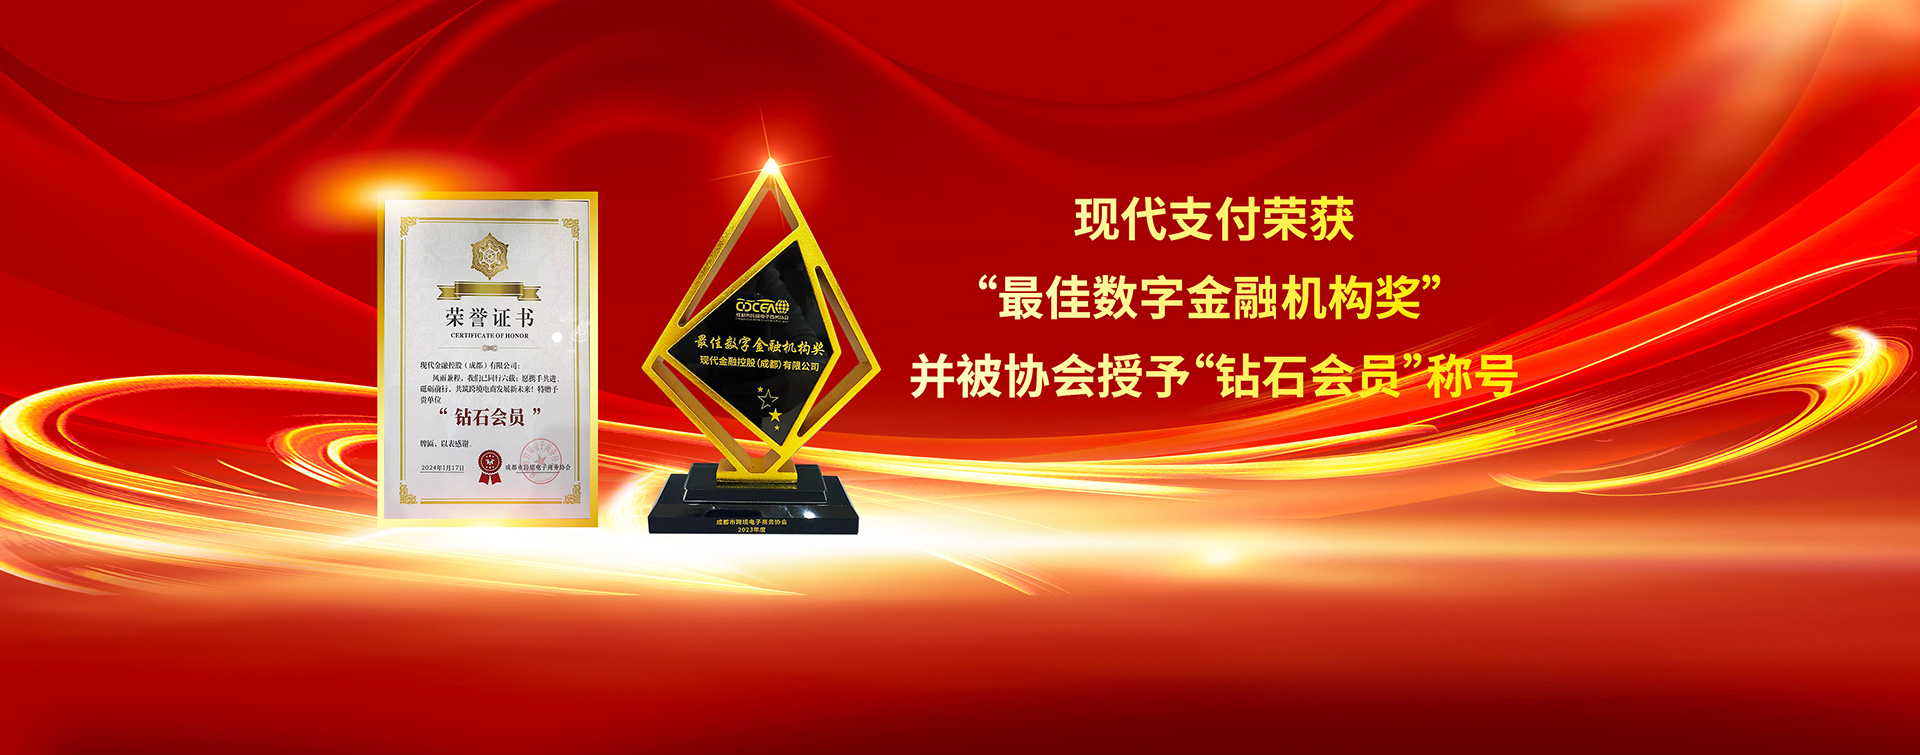 现代支付荣获 “最佳数字金融机构奖” 并被协会授予“钻石会员”称号